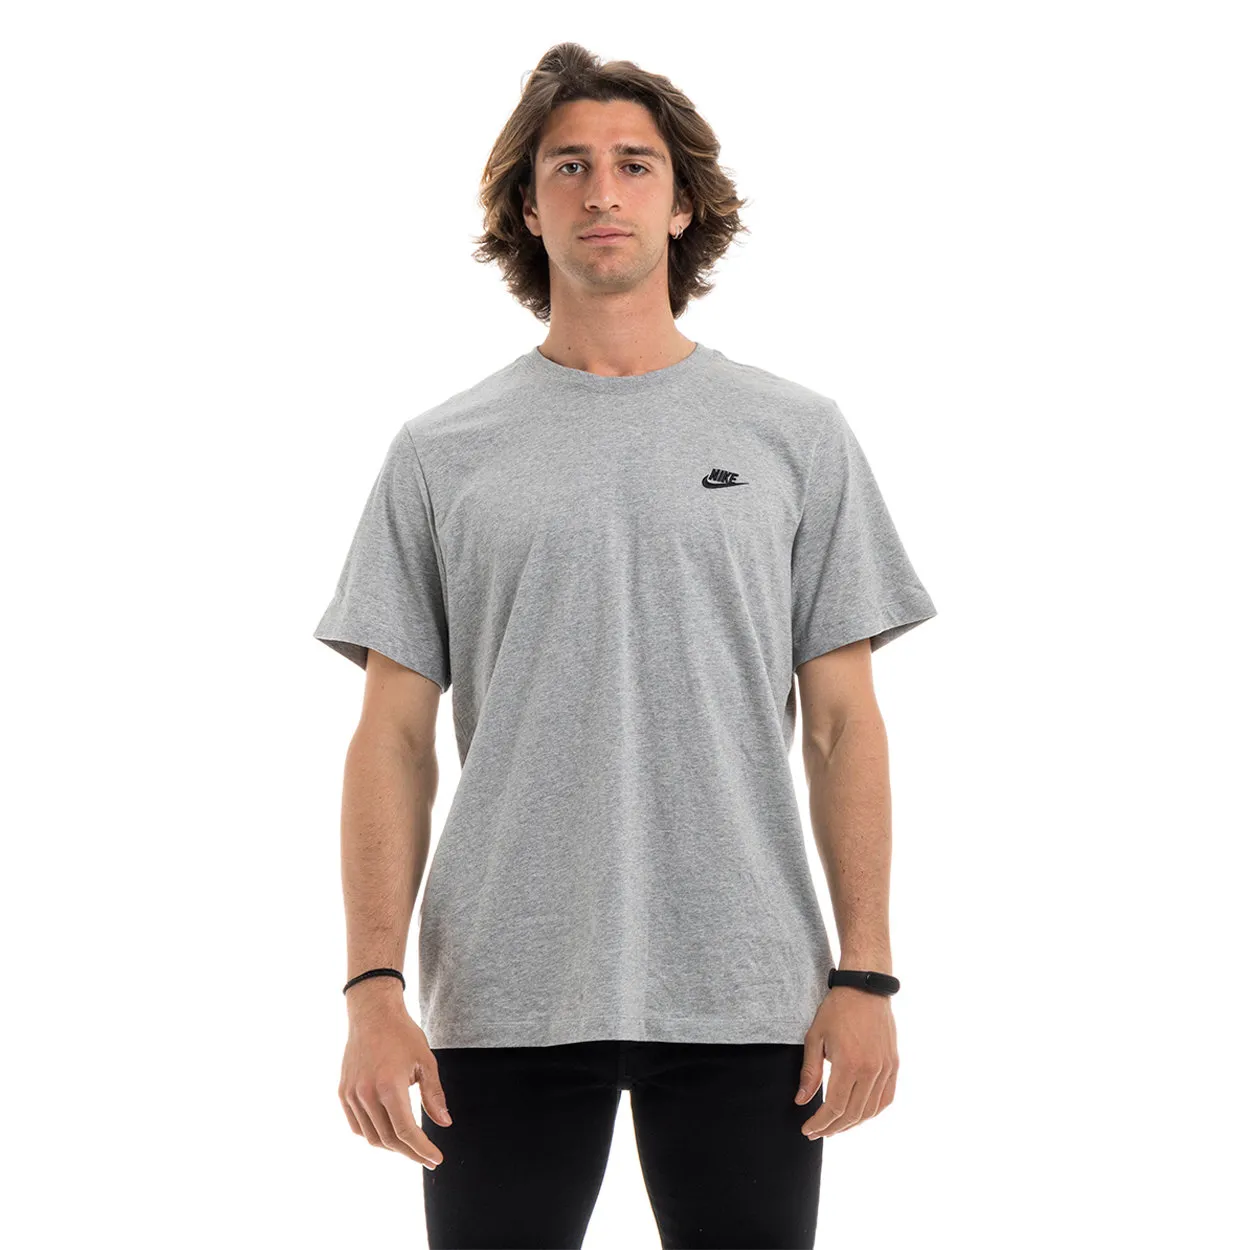 T-shirt Nike grigio melange